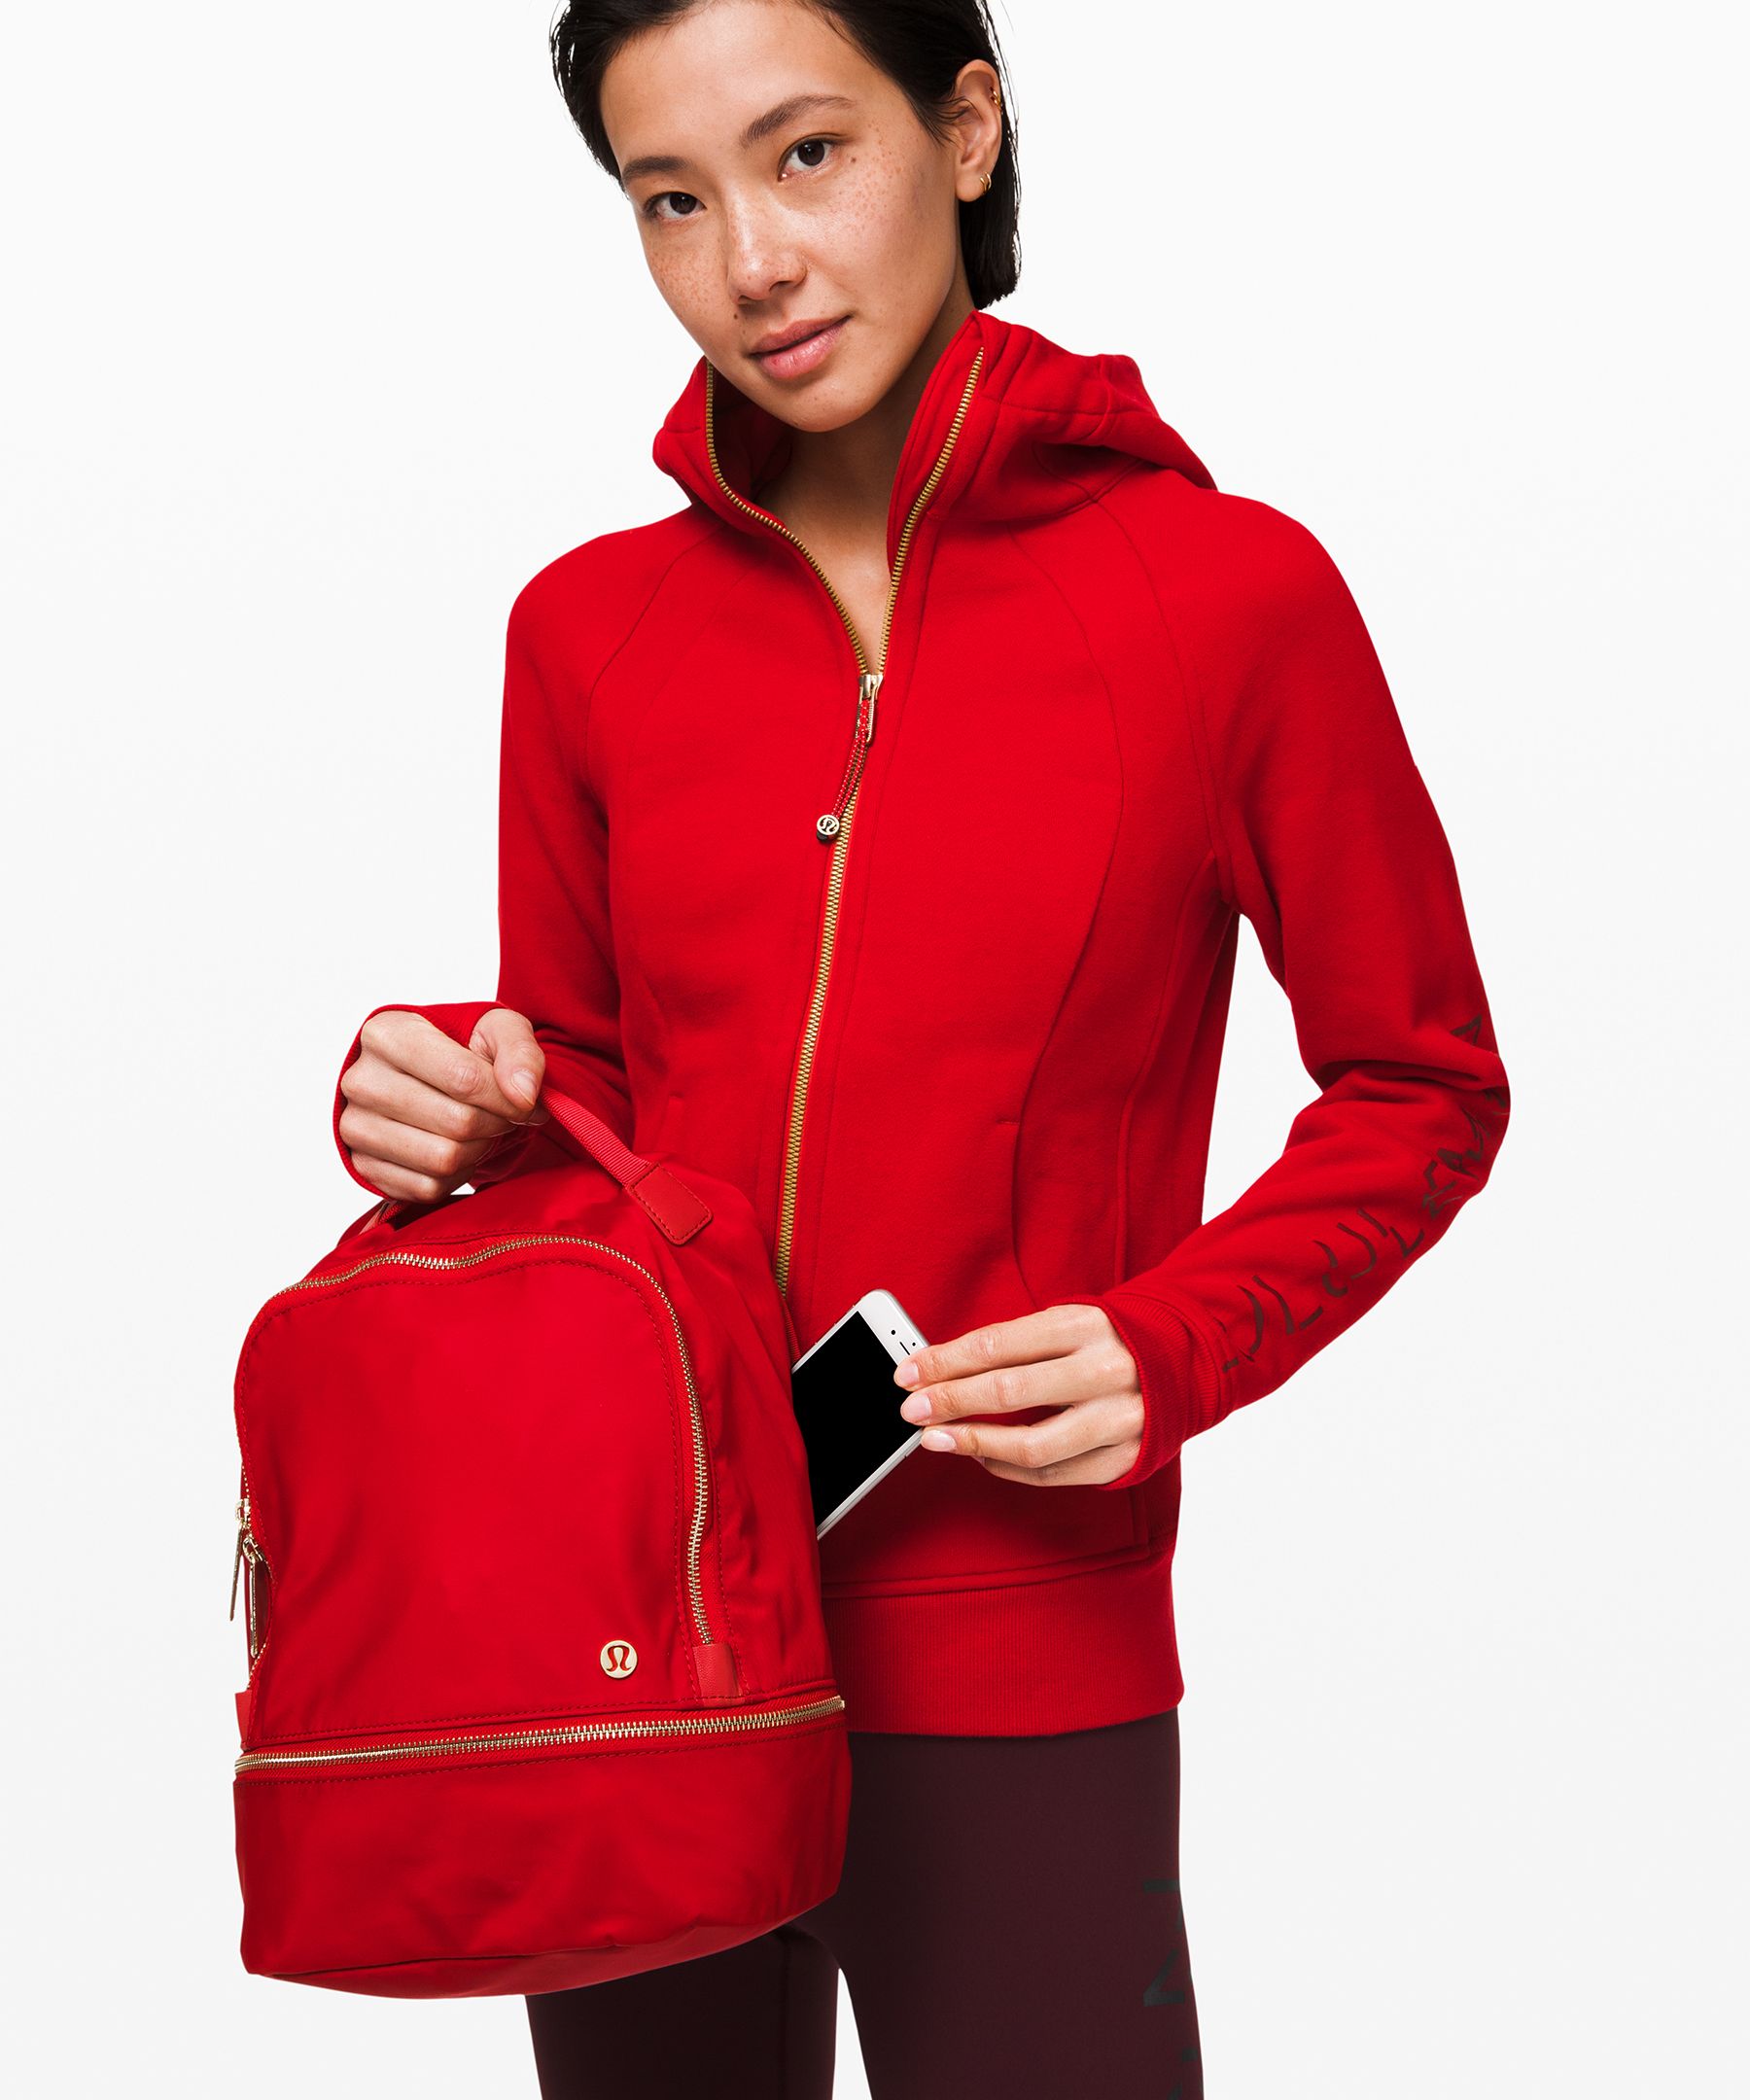 lululemon mini backpack